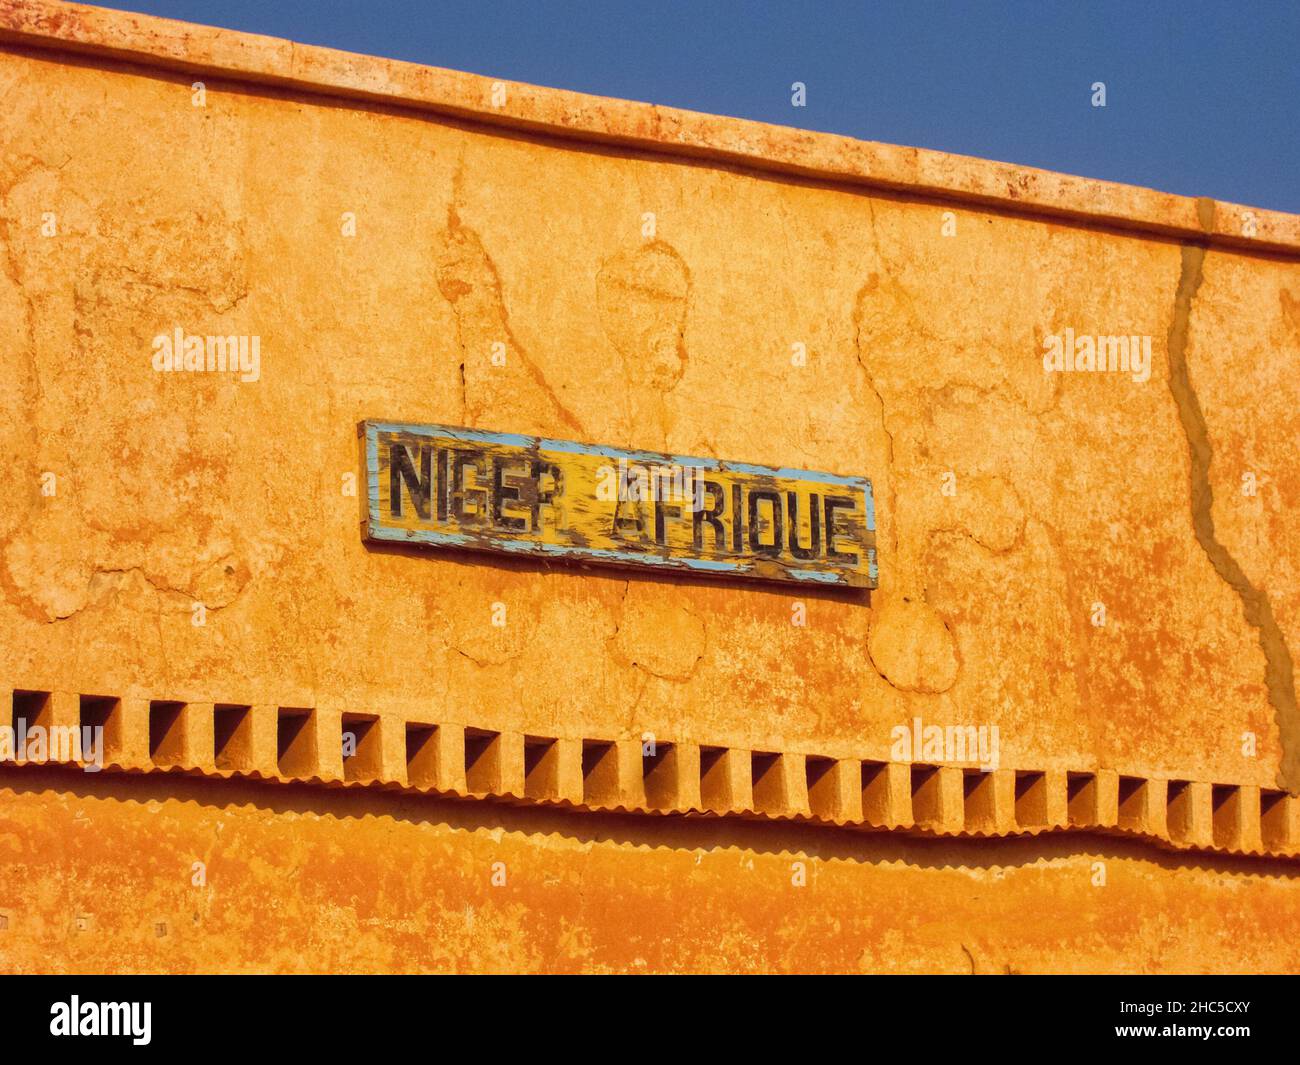 Niger Afrique, iscrizione su un muro di argilla in un villaggio del Niger, nell'Africa occidentale. Il Niger ha il francese come lingua ufficiale. Foto Stock